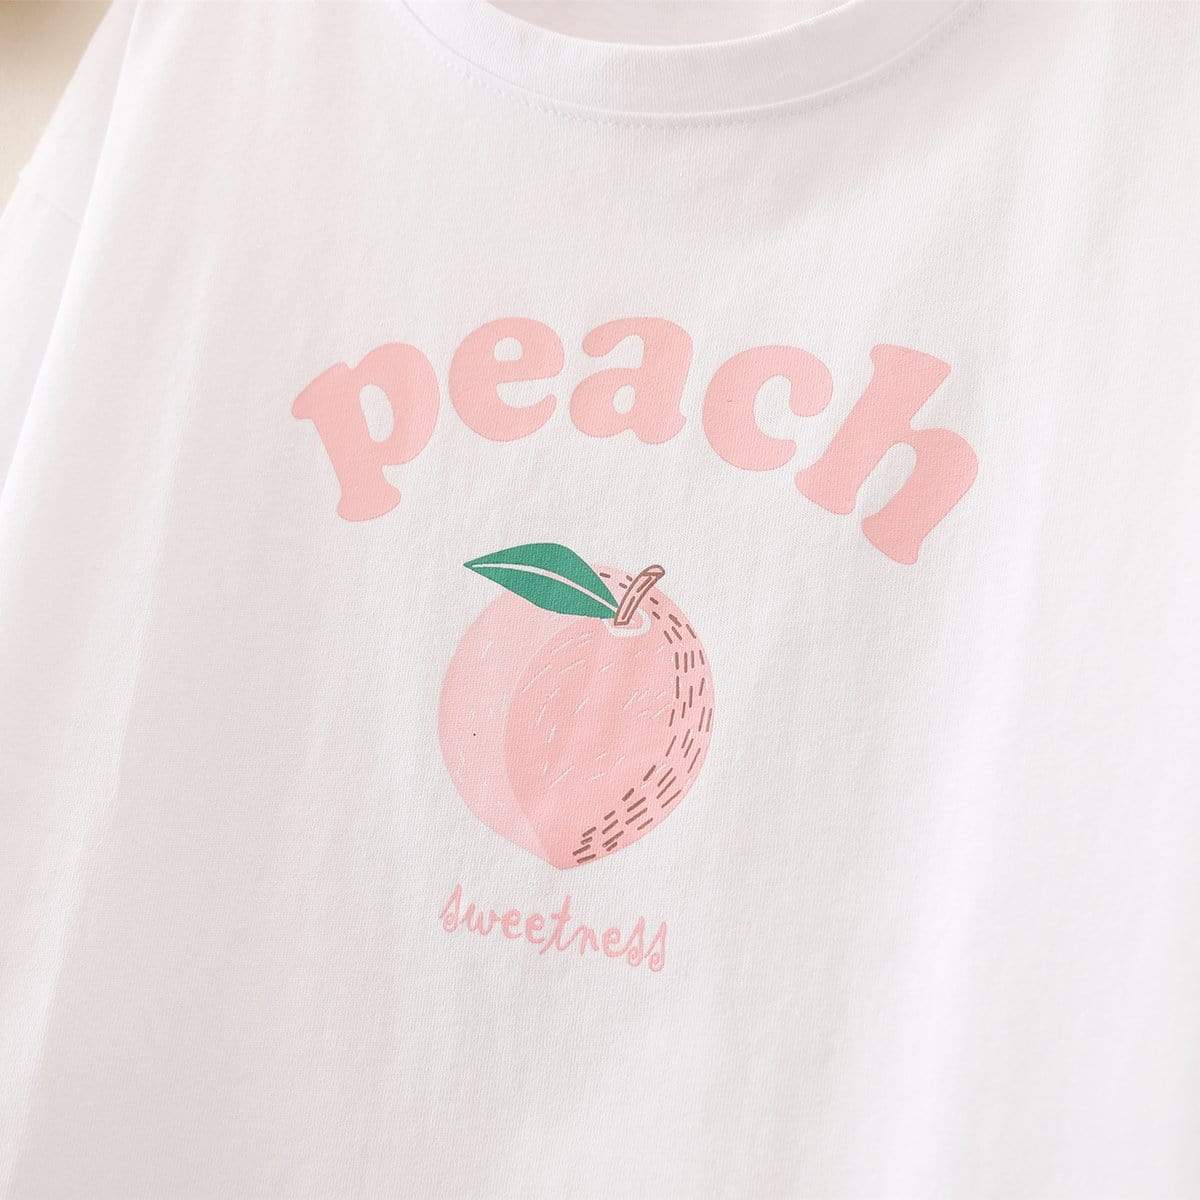 Kawaiifashion - Camisetas estampadas de melocotón dulce para mujer, talla única